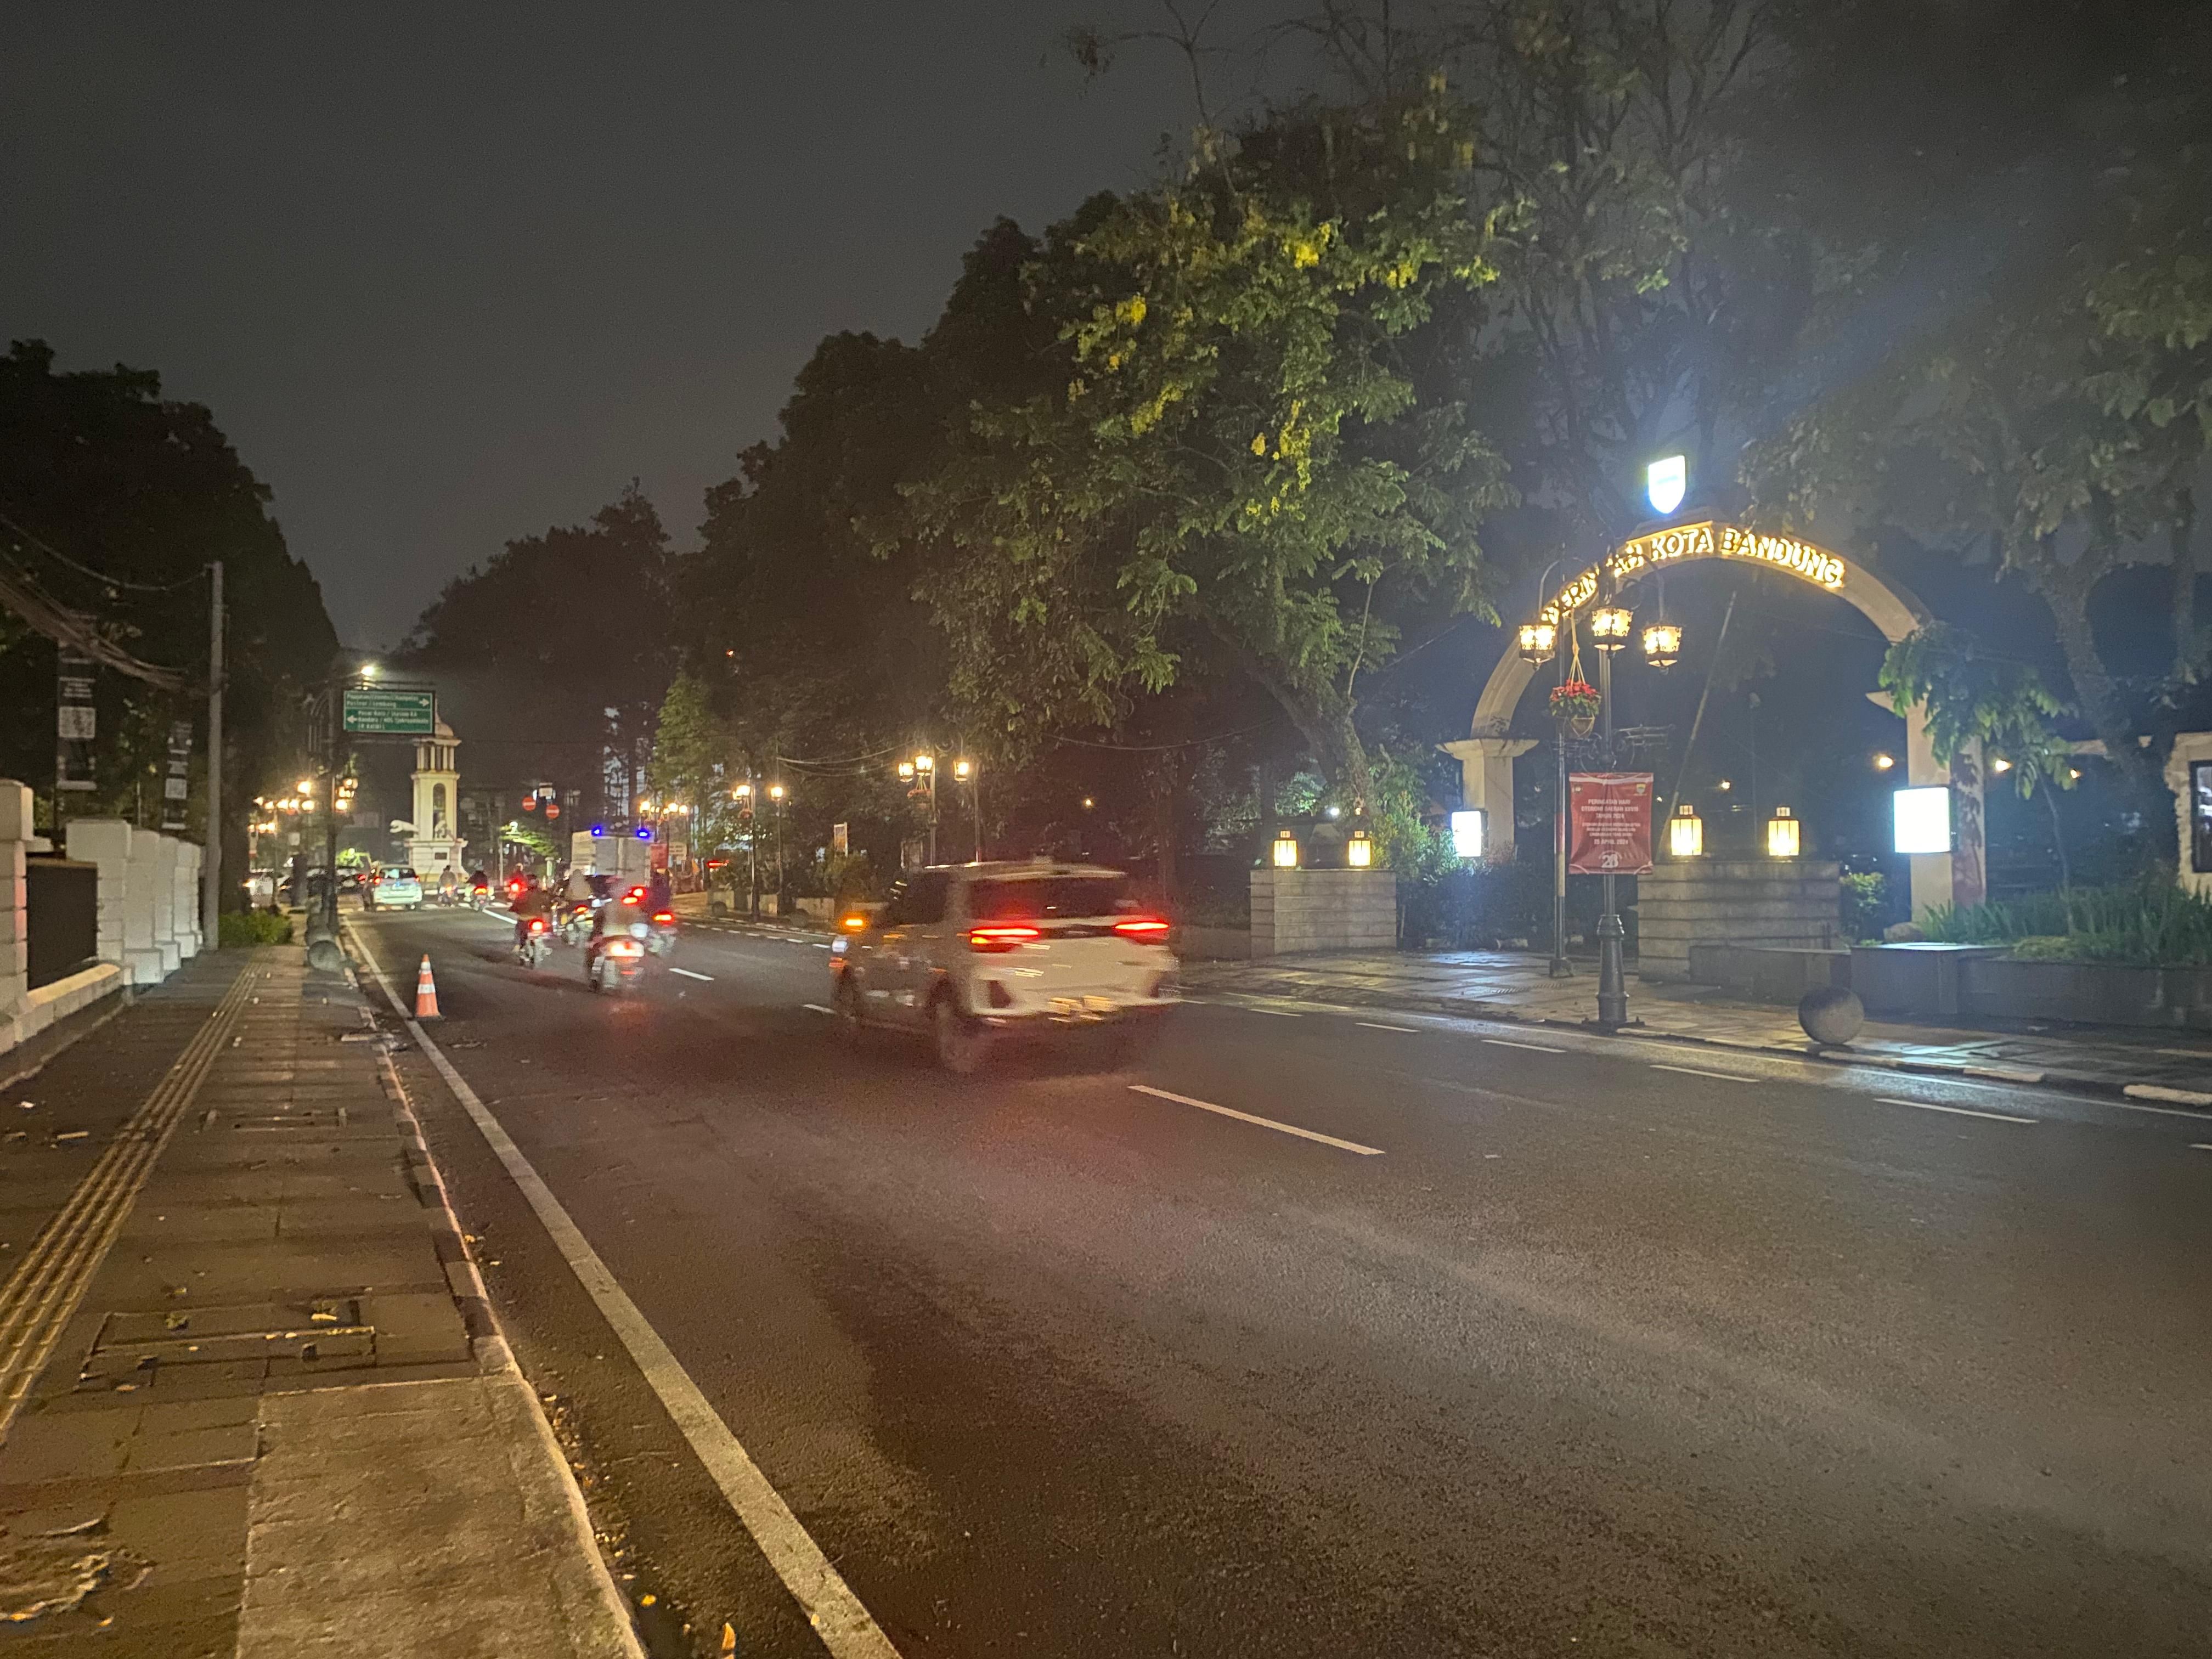 Braga Beken Diterapkan, Lalu Lintas di Pusat Kota Bandung Lancar Berjalan